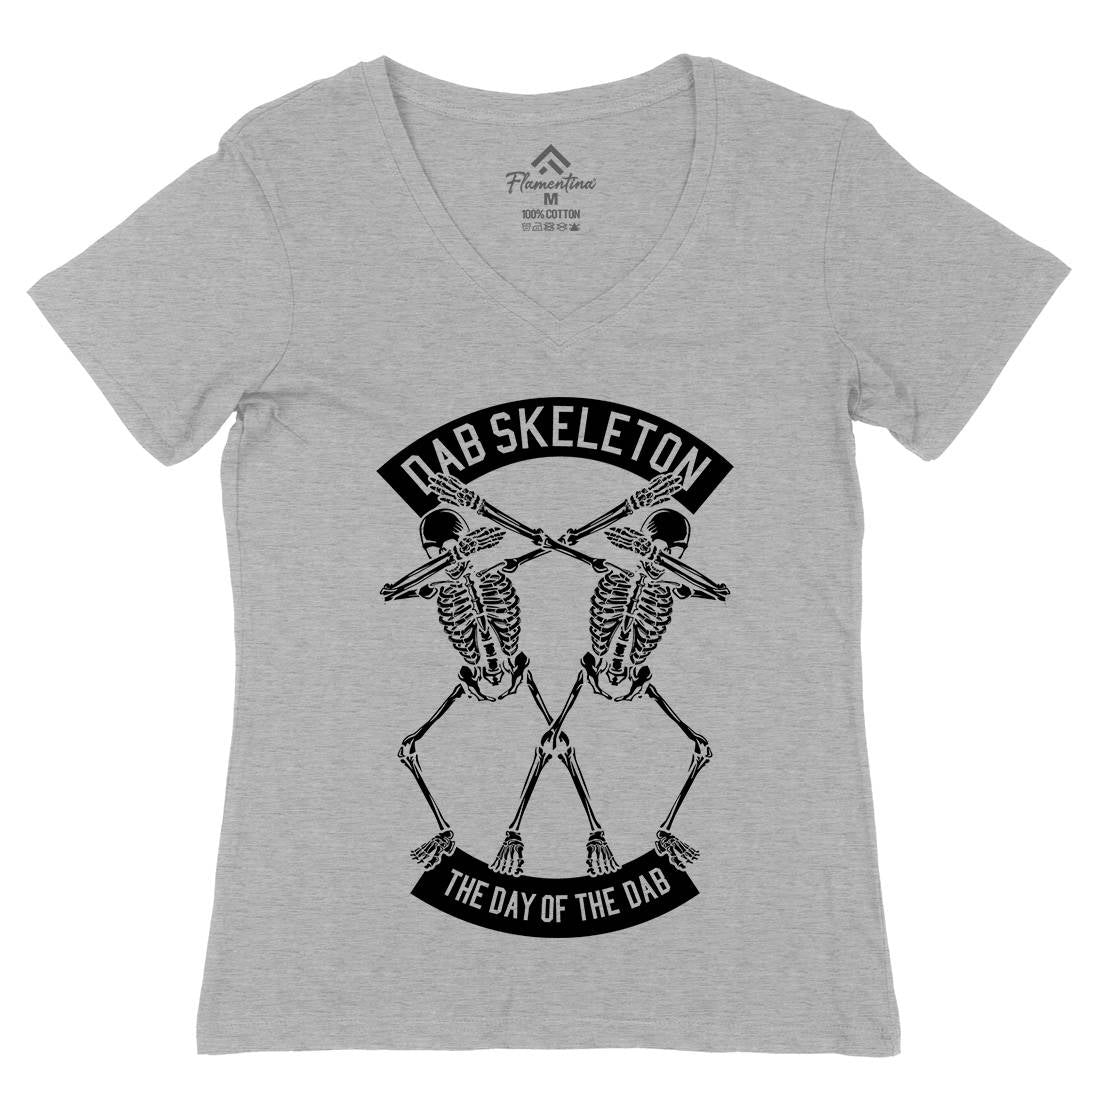 Dab Skeleton Womens Organic V-Neck T-Shirt Music B524